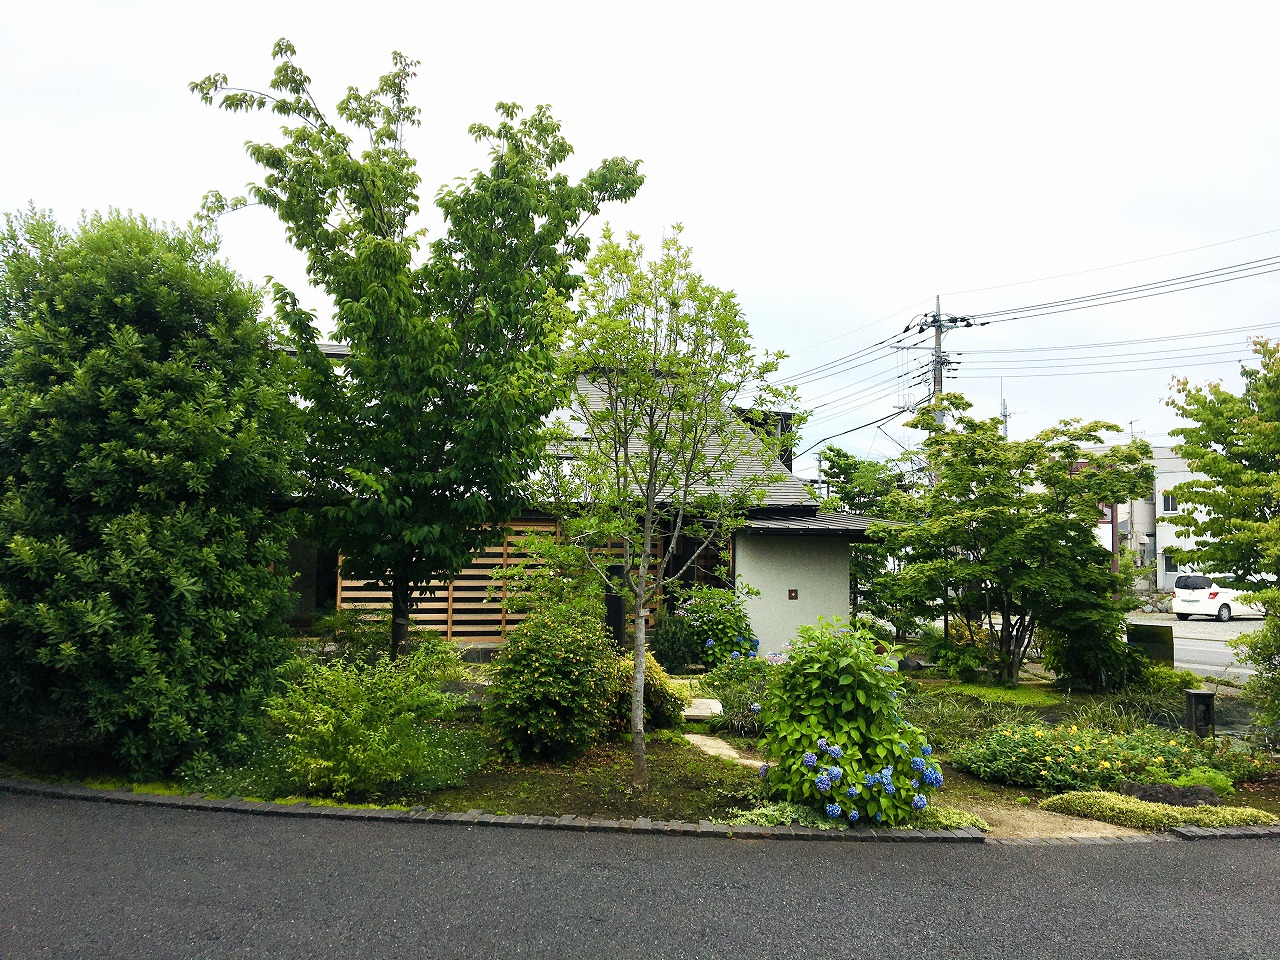 埼玉県行田市で薪ストーブや自然素材を使った木の家のおしゃれな新築注文住宅を建てるなら小林建設